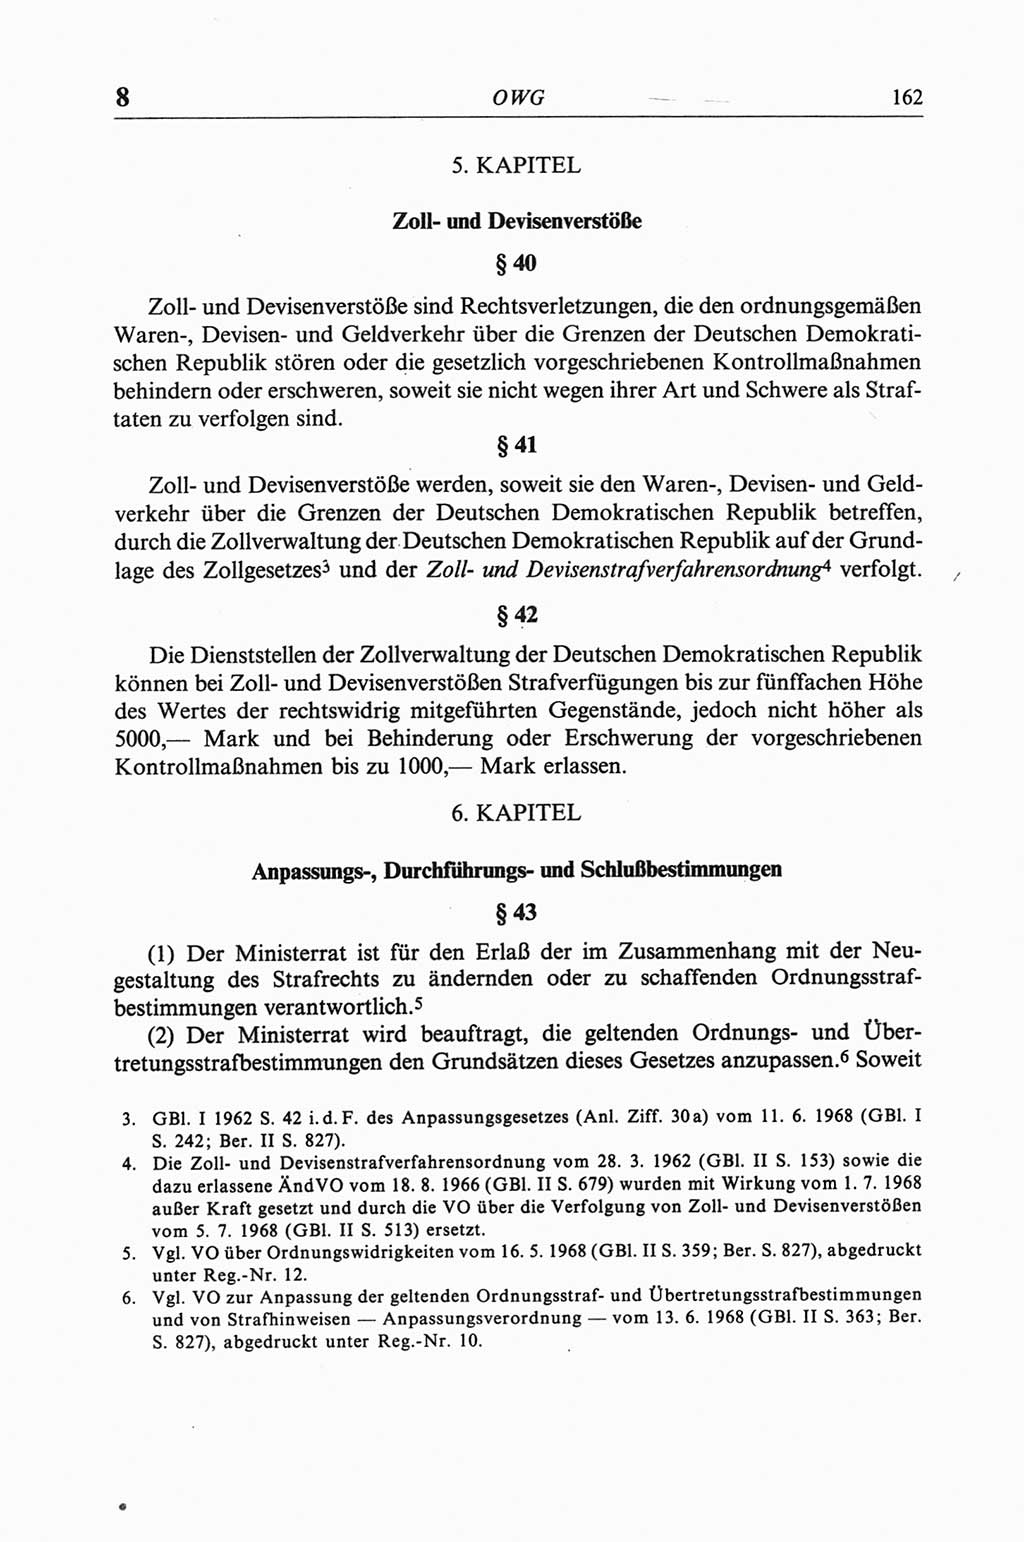 Strafgesetzbuch (StGB) der Deutschen Demokratischen Republik (DDR) und angrenzende Gesetze und Bestimmungen 1968, Seite 162 (StGB Ges. Best. DDR 1968, S. 162)